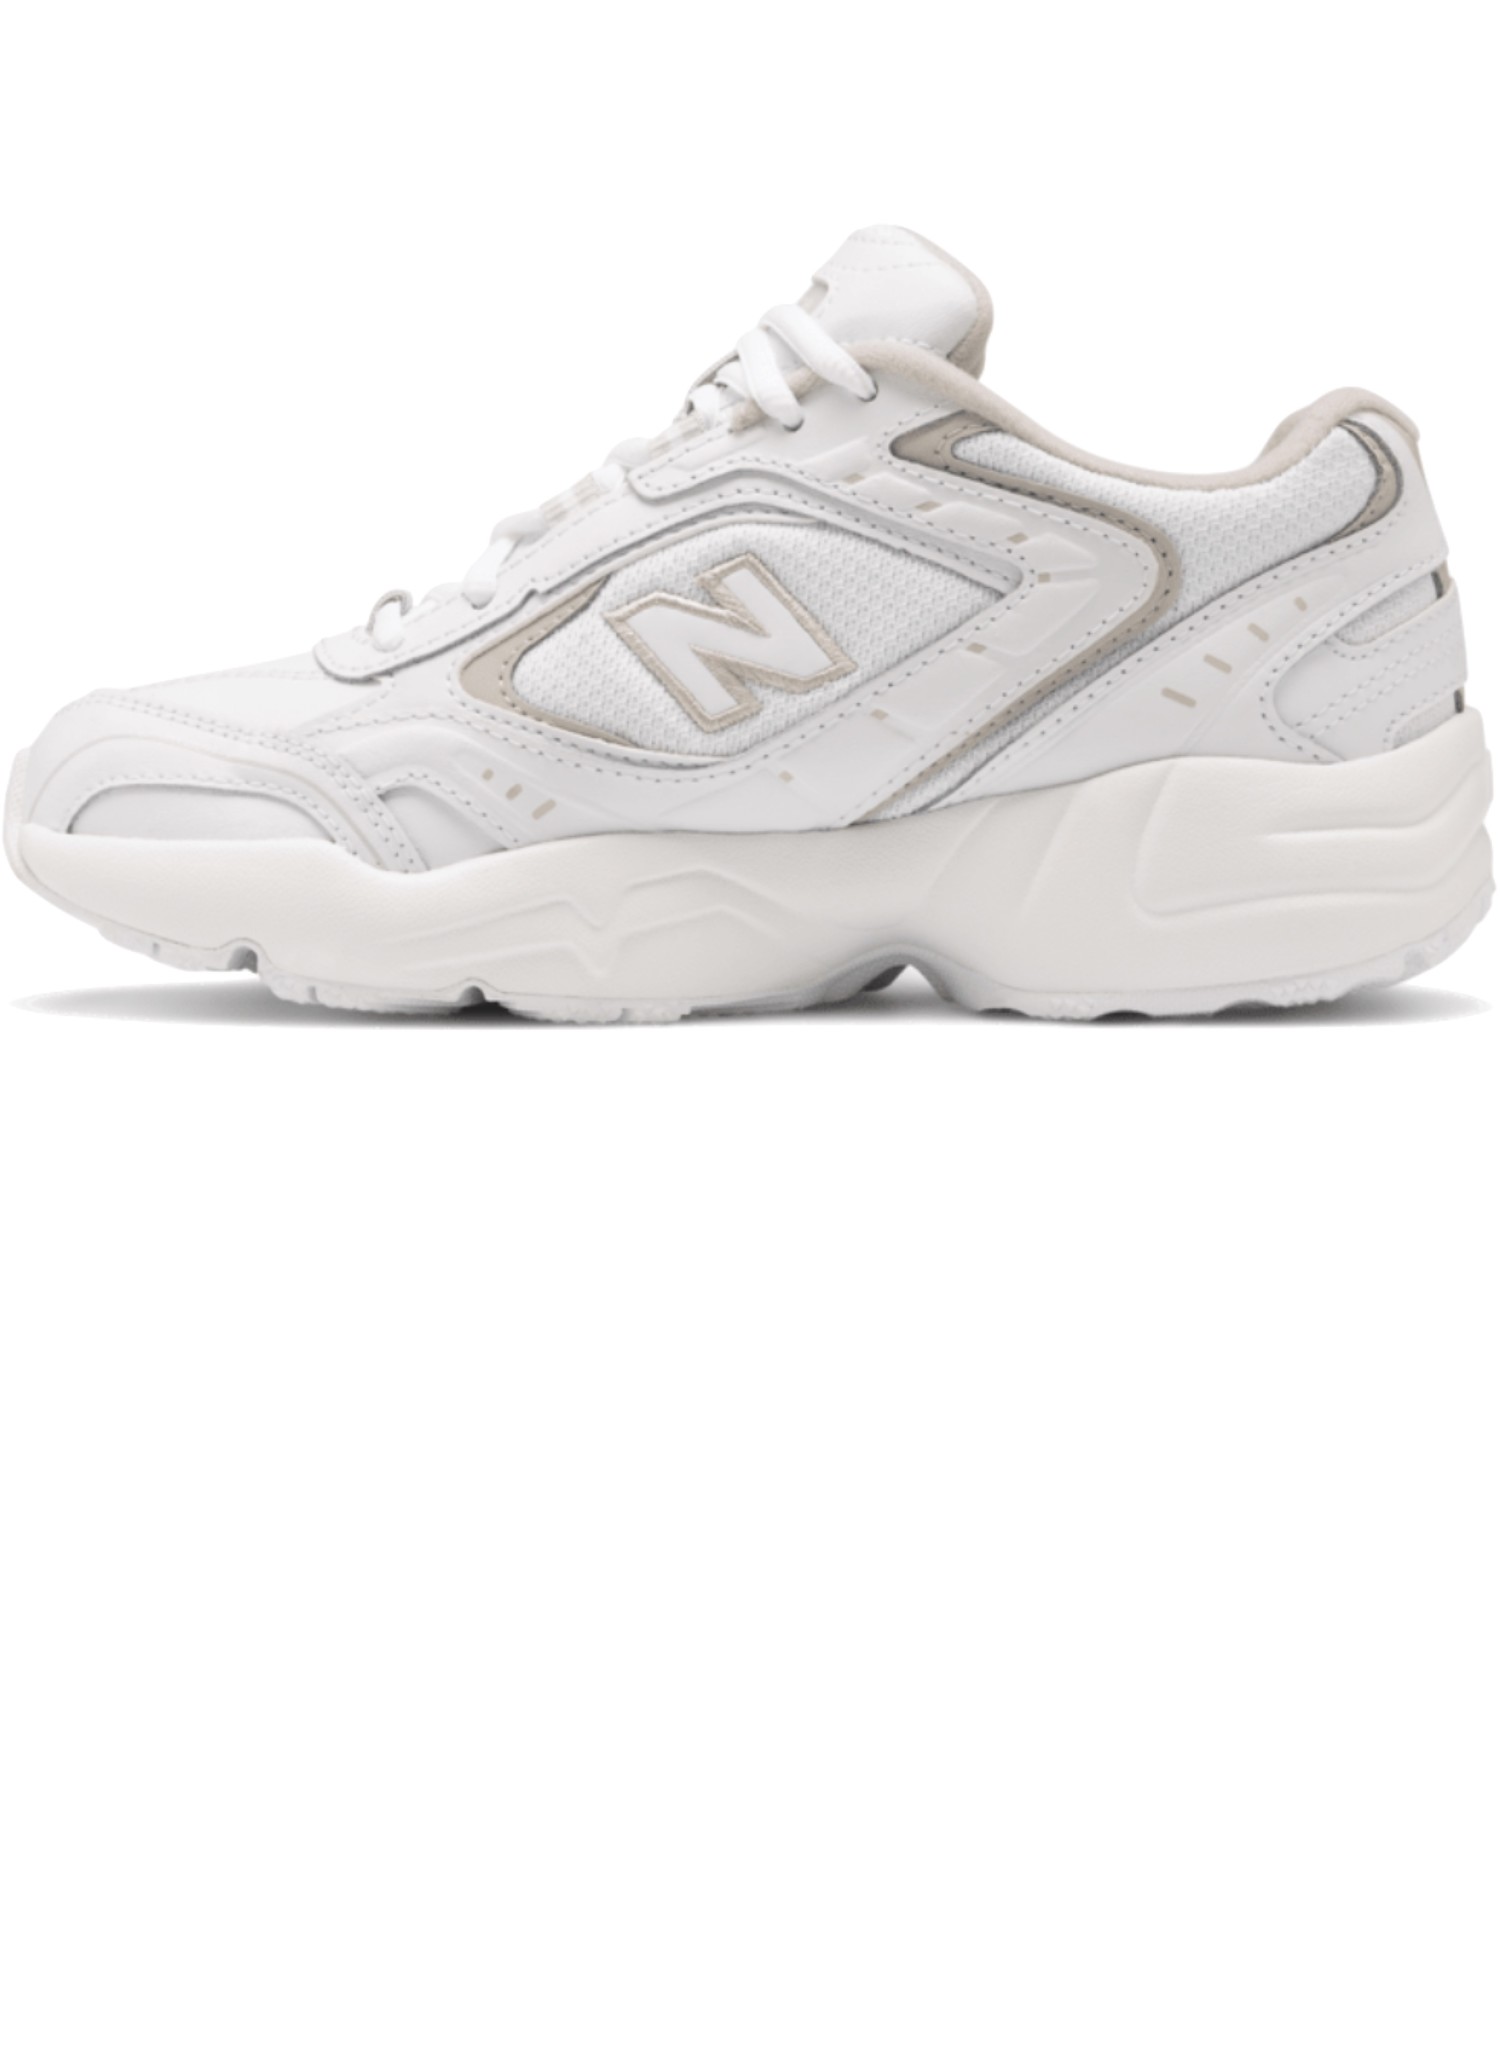 オンライン限定商品 ニューバランス WX452sg - 靴